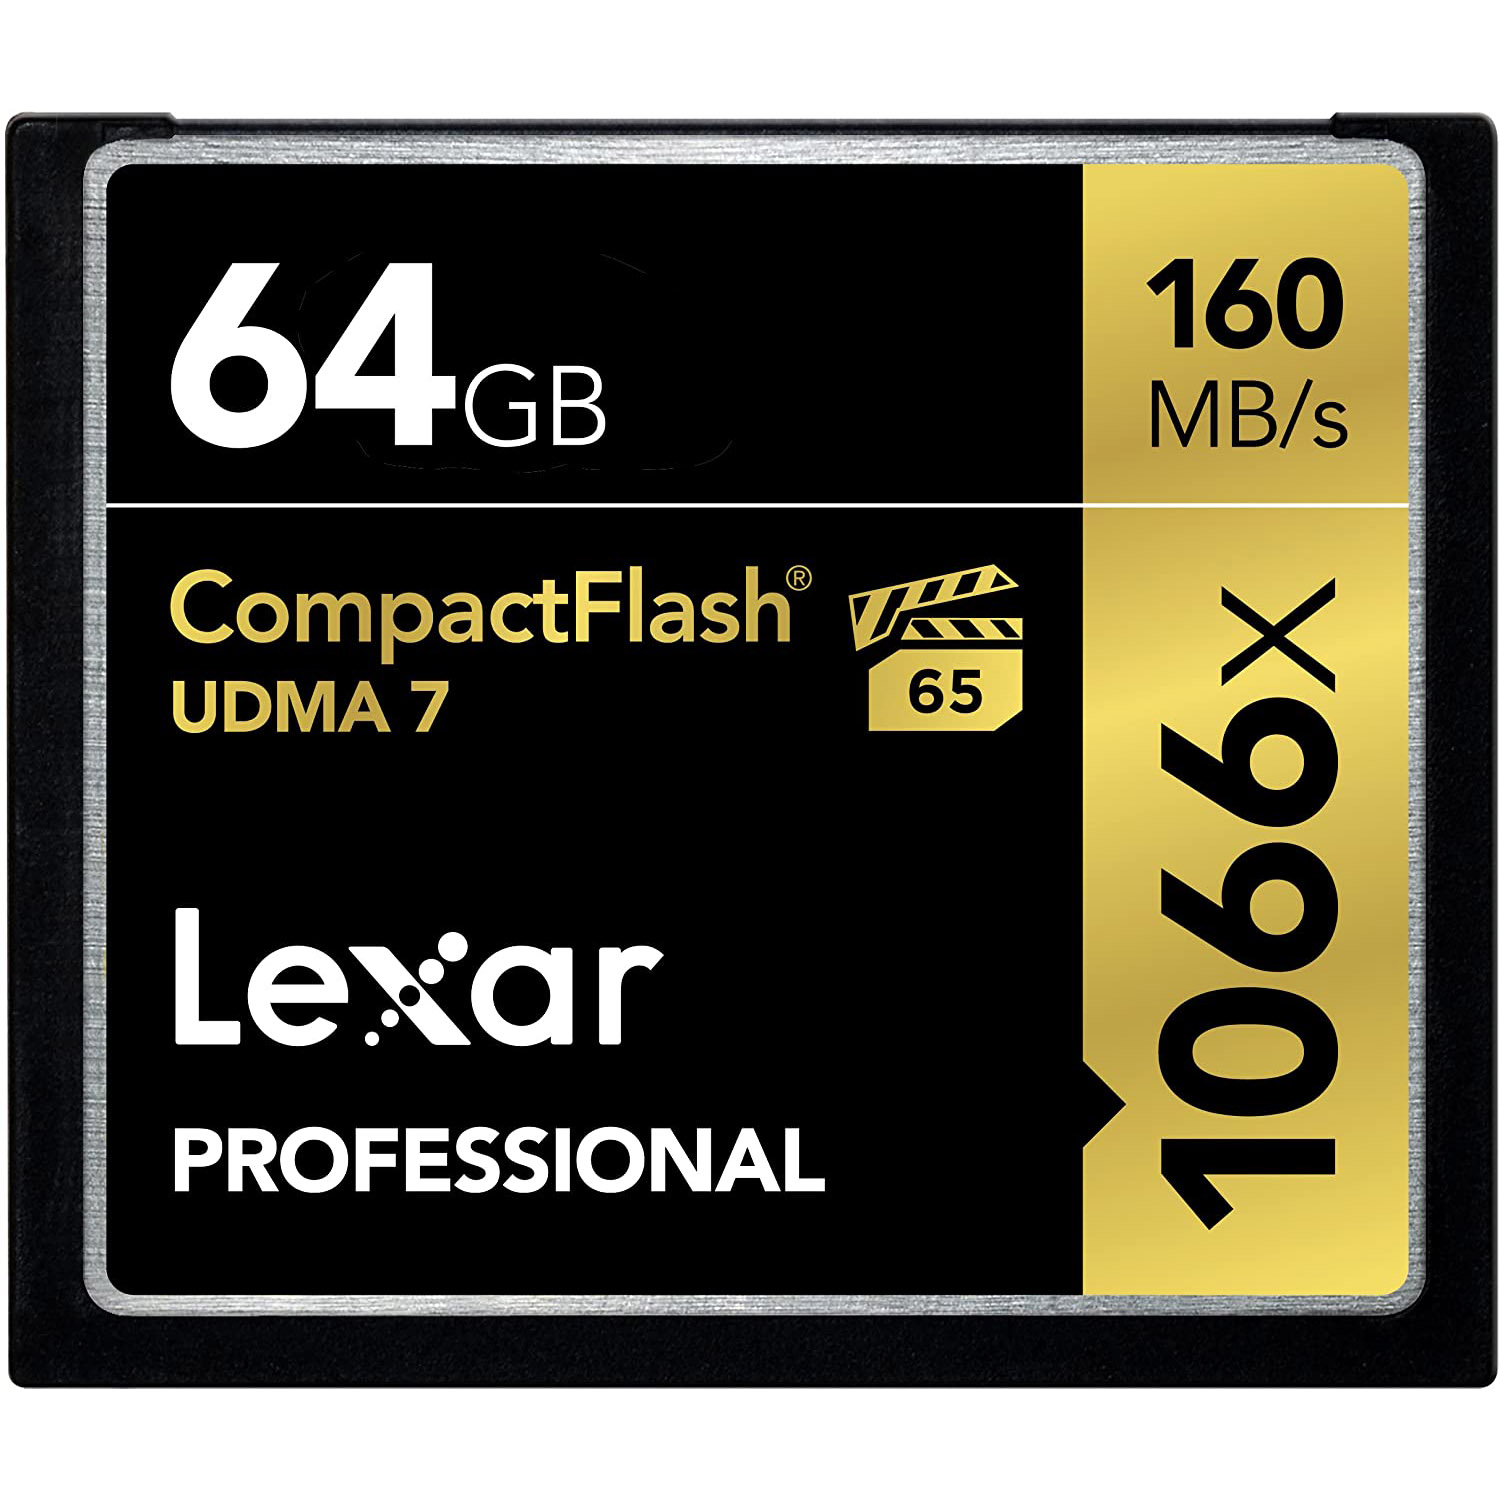 TARJETA CF 64 GB LEXAR 1066X (160MB/SG) 4K UDMA7